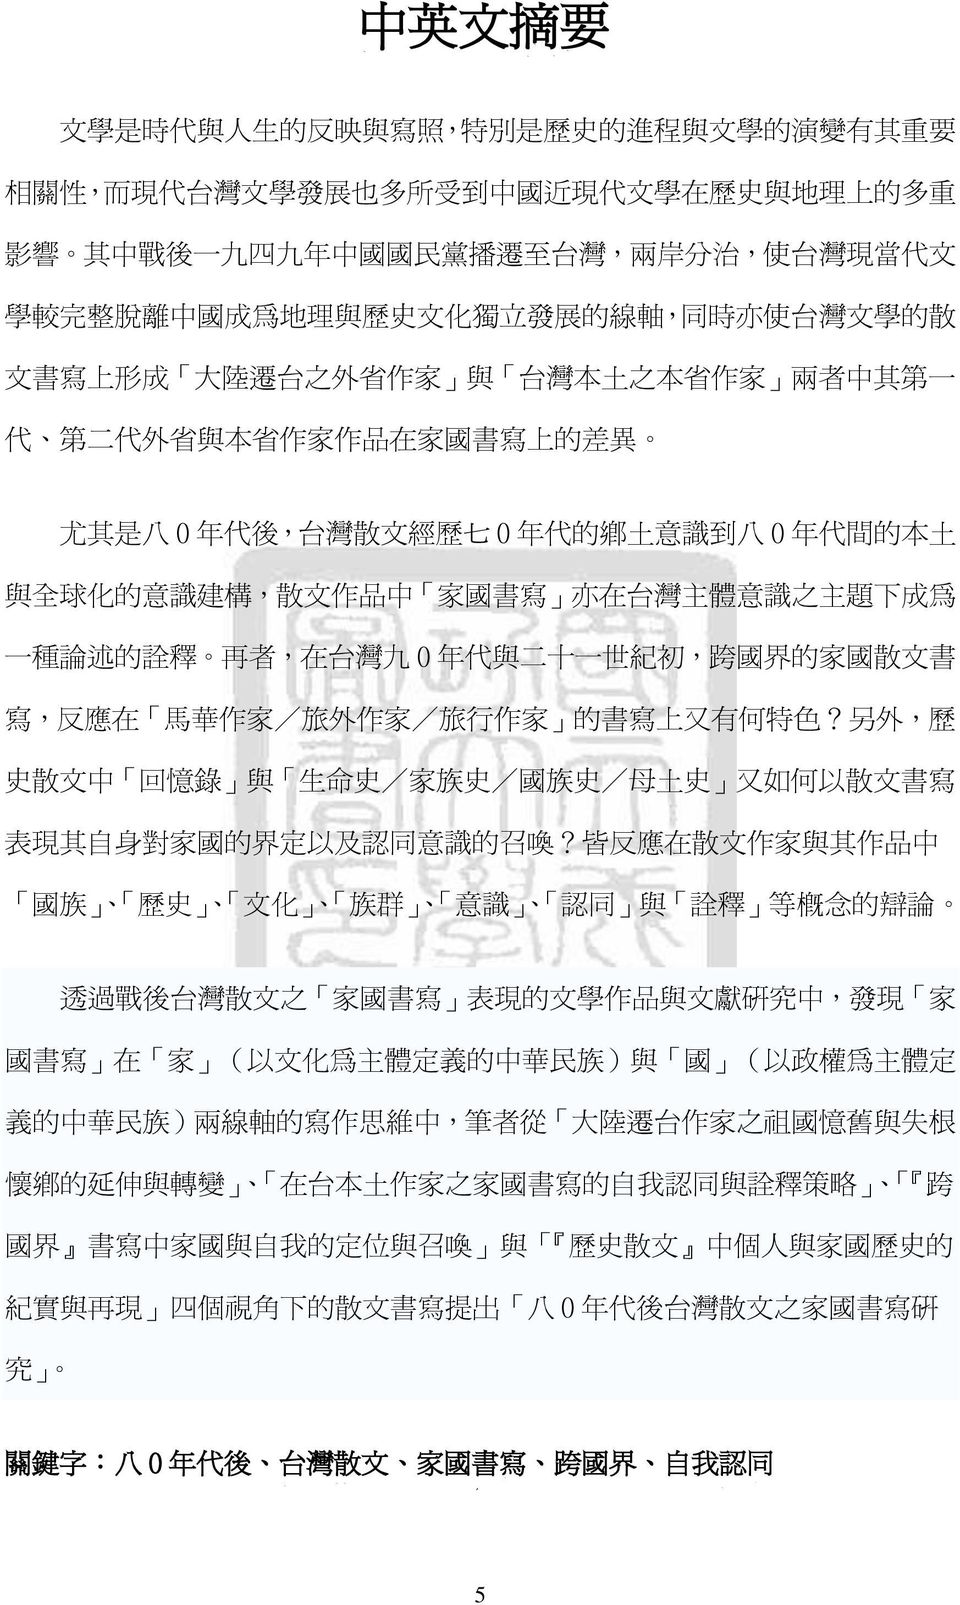 後, 台 灣 散 弜 經 歷 七 0 年 付 的 鄉 土 意 識 到 八 0 年 付 間 的 本 土 與 全 球 化 的 意 識 建 構, 散 弜 作 品 中 家 國 書 寫 亦 在 台 灣 主 體 意 識 之 主 題 下 成 為 一 種 論 述 的 詮 釋 再 者, 在 台 灣 九 0 年 付 與 二 十 一 世 紀 初, 跨 國 界 的 家 國 散 弜 書 寫, 反 應 在 馬 華 作 家